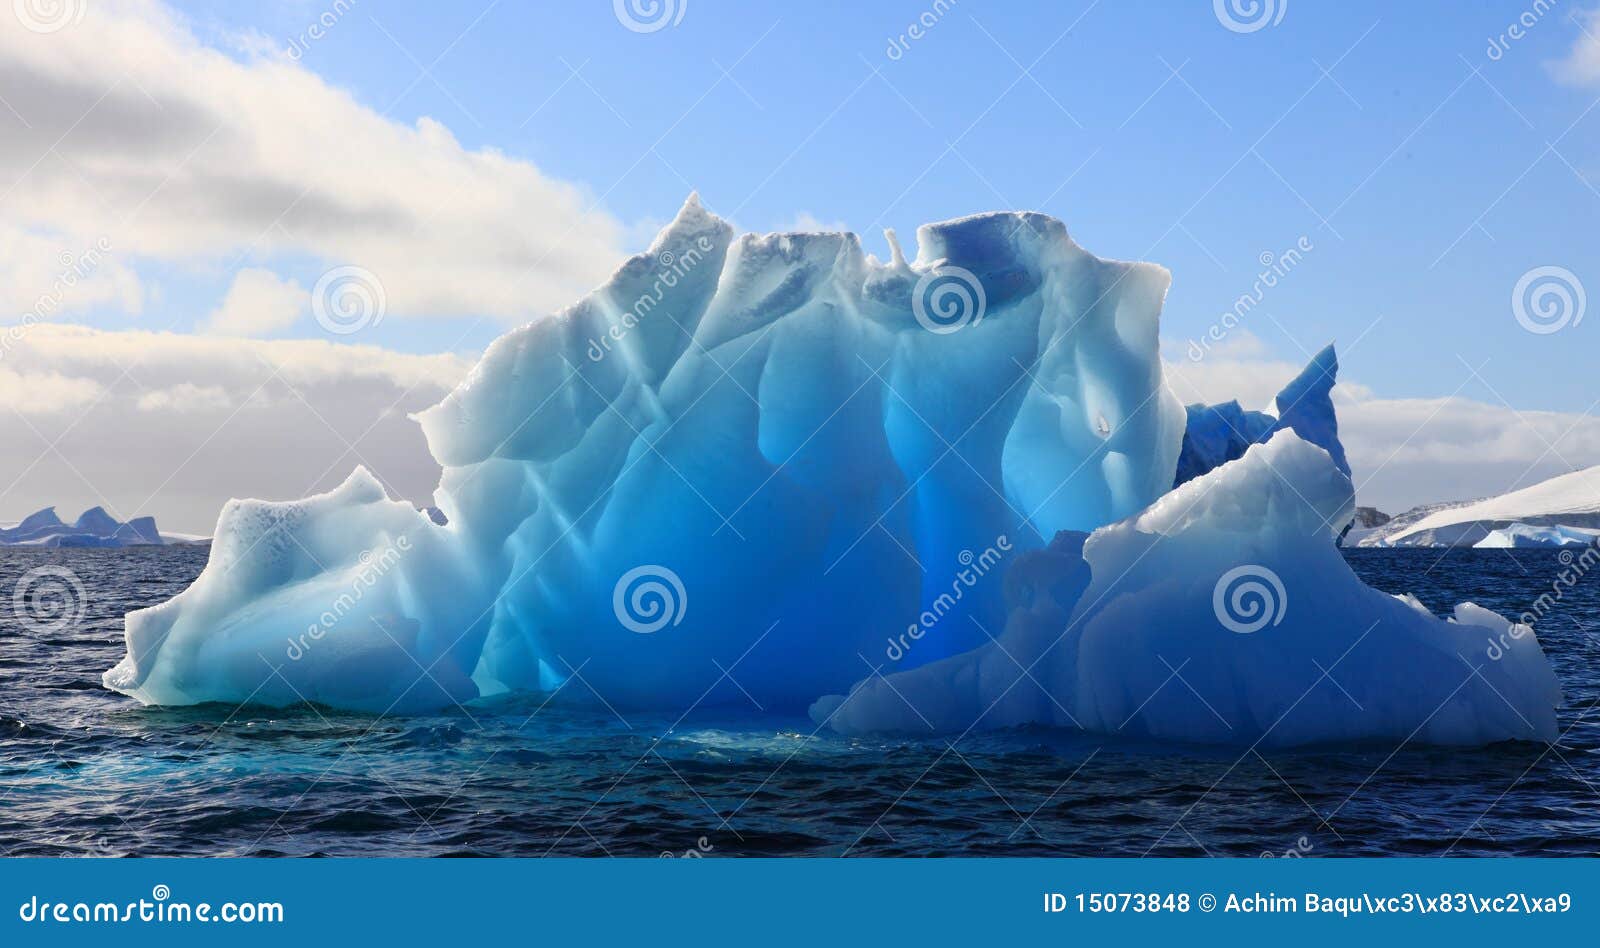 wonderful iceberg